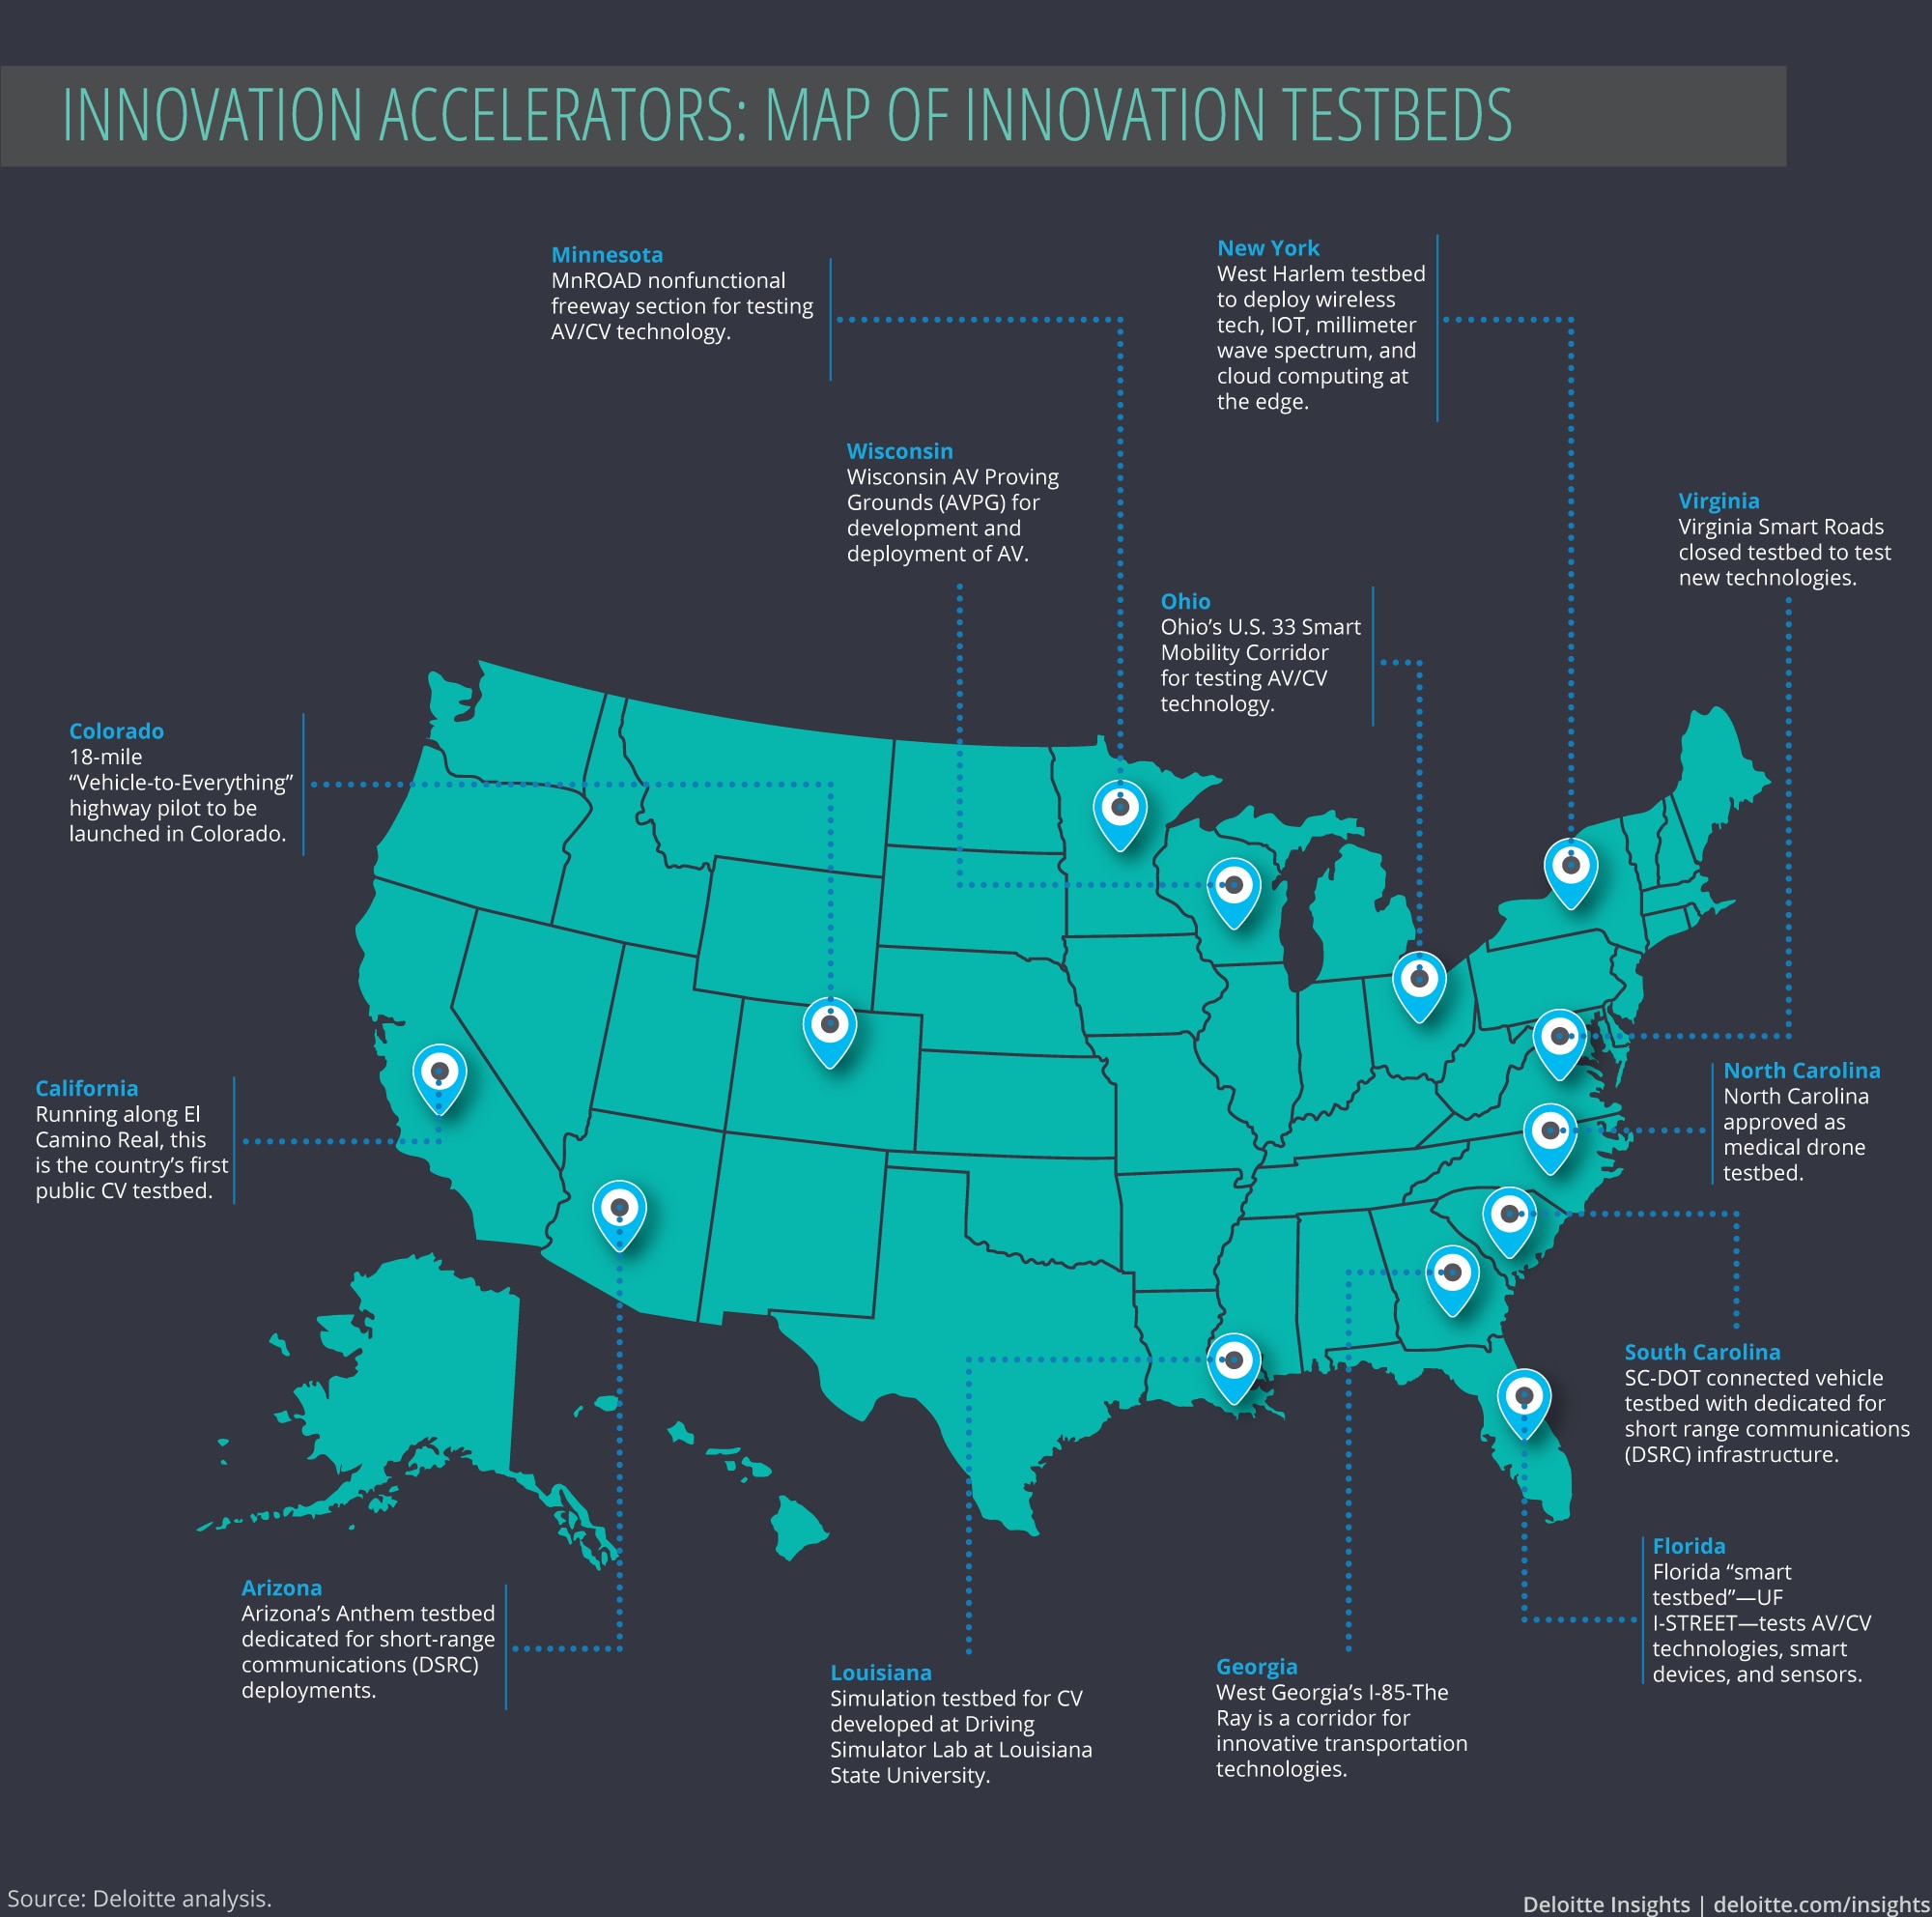 Map on innovation testbeds by USDOT